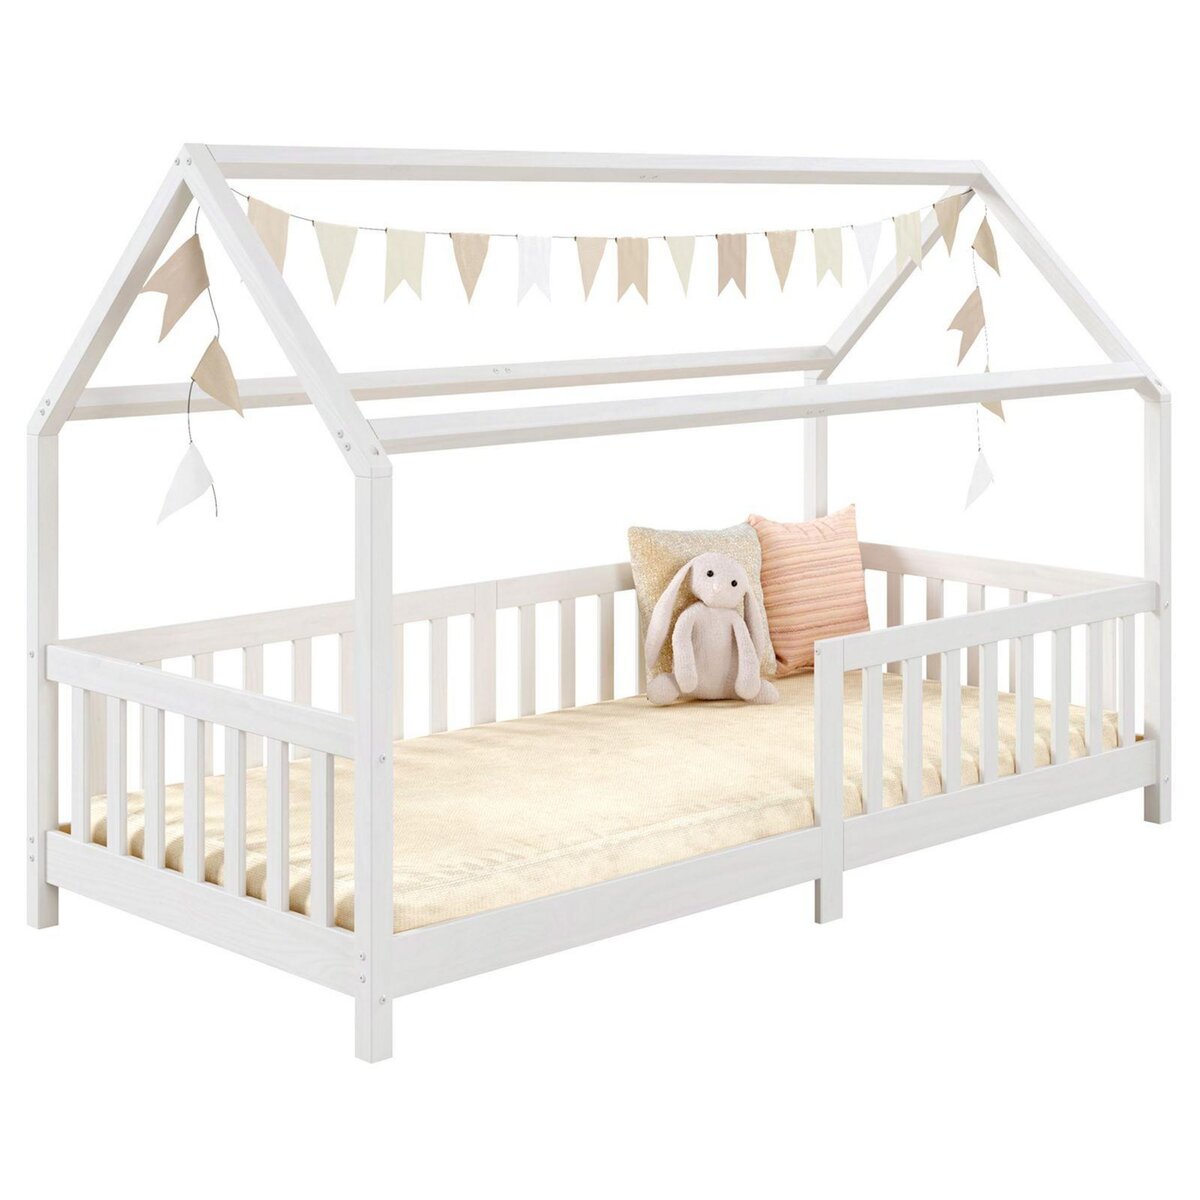 Lit cabane FINA lit simple pour enfant 90 x 190 cm, avec barrières de  protection sur 3 côtés, en pin massif à la finition naturelle